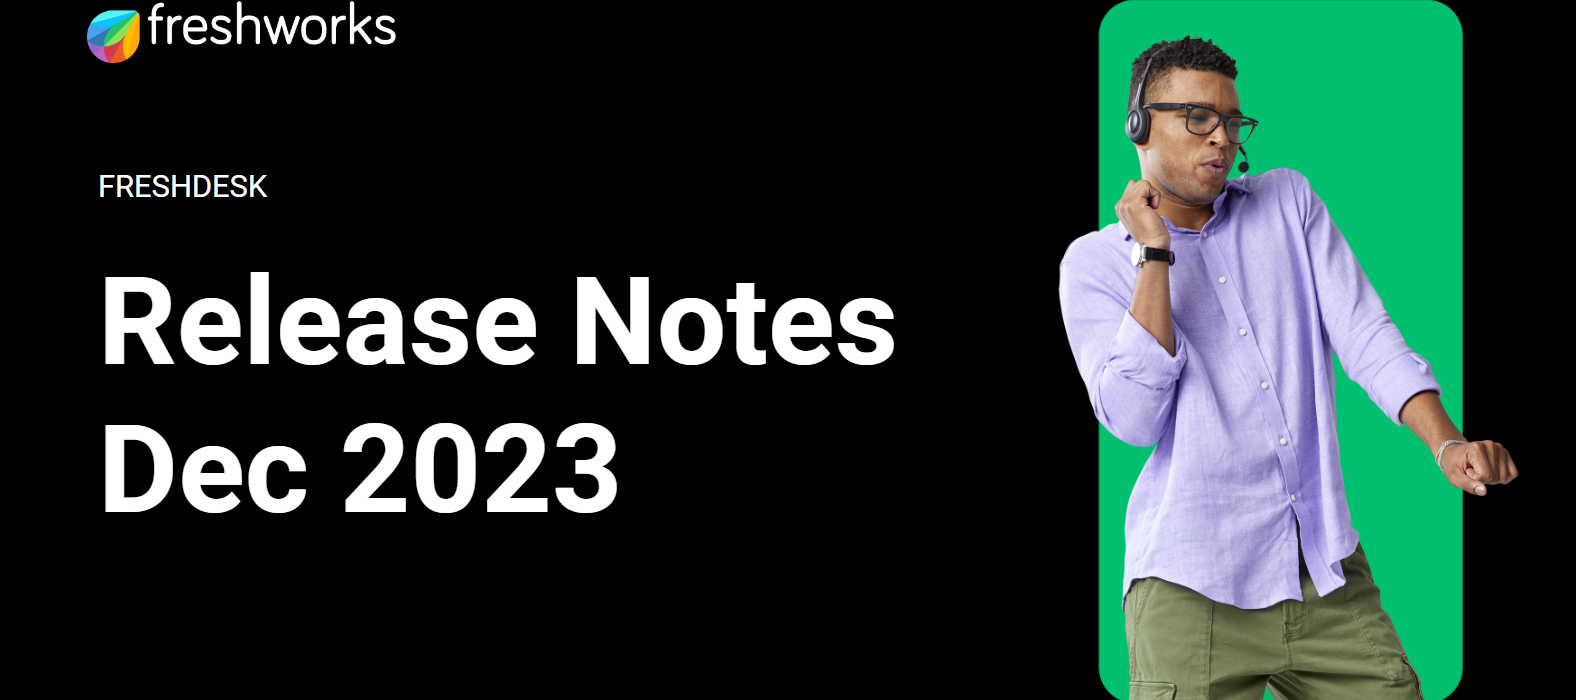 Freshdesk Release Notes - December 2023